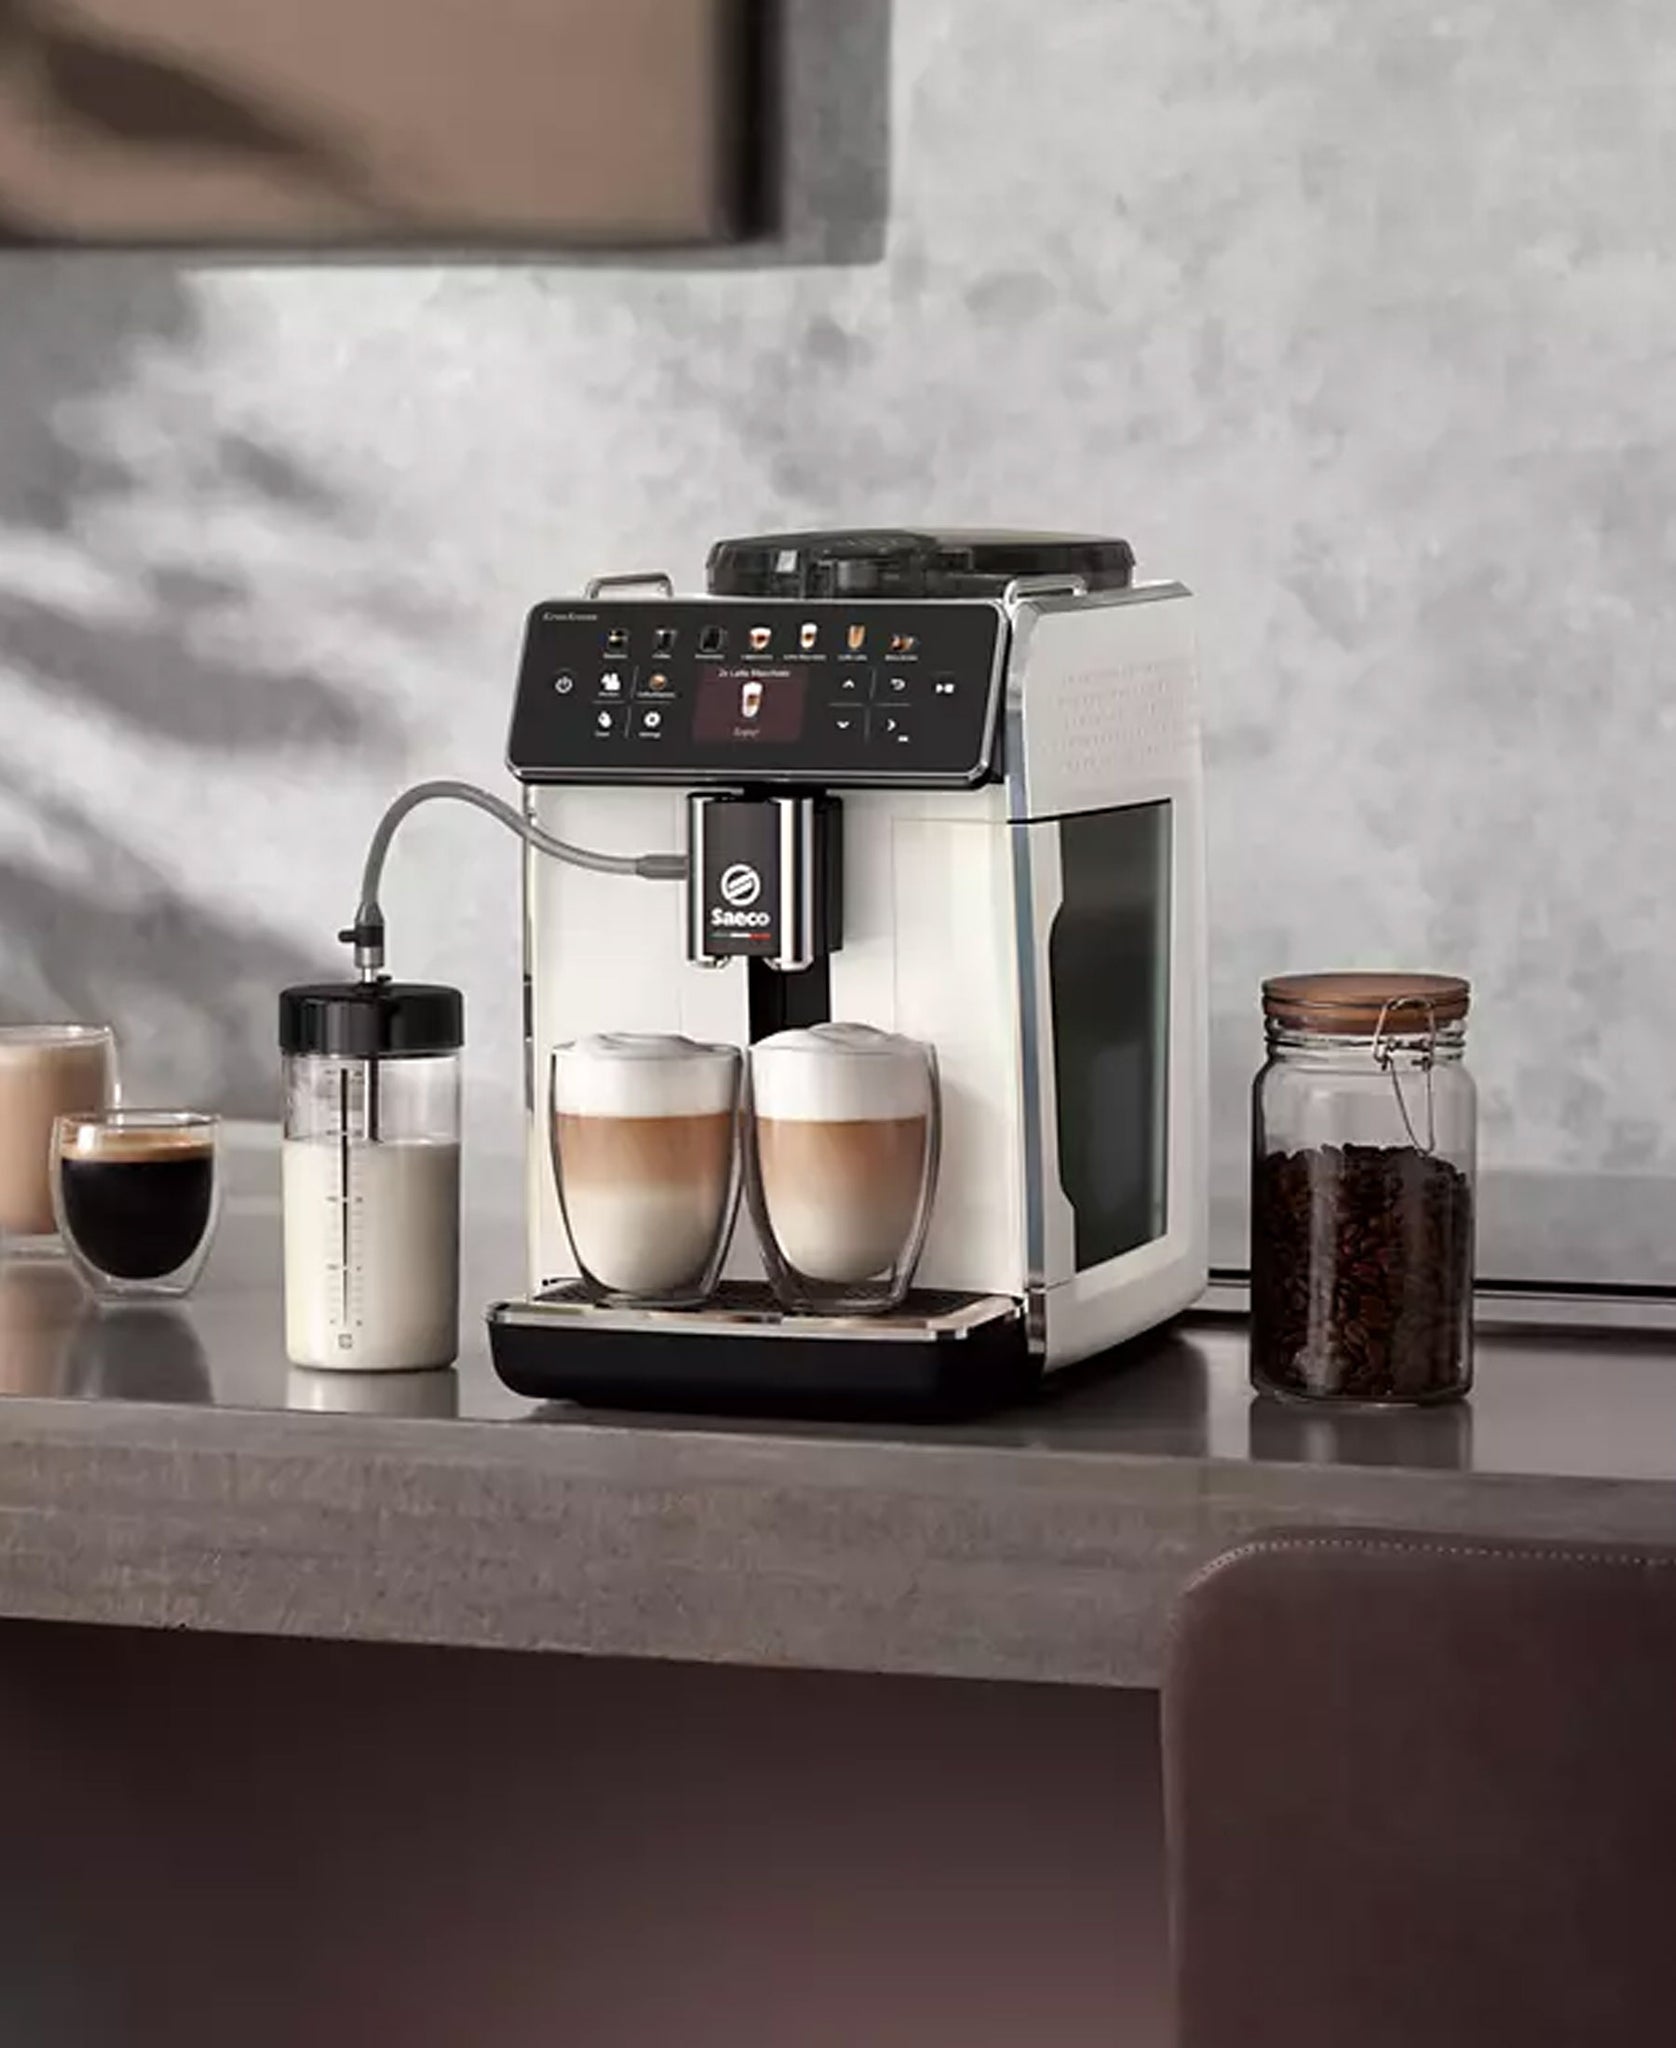 Saeco Coffee Gran Aroma Fully Automatic Espresso Machine - White